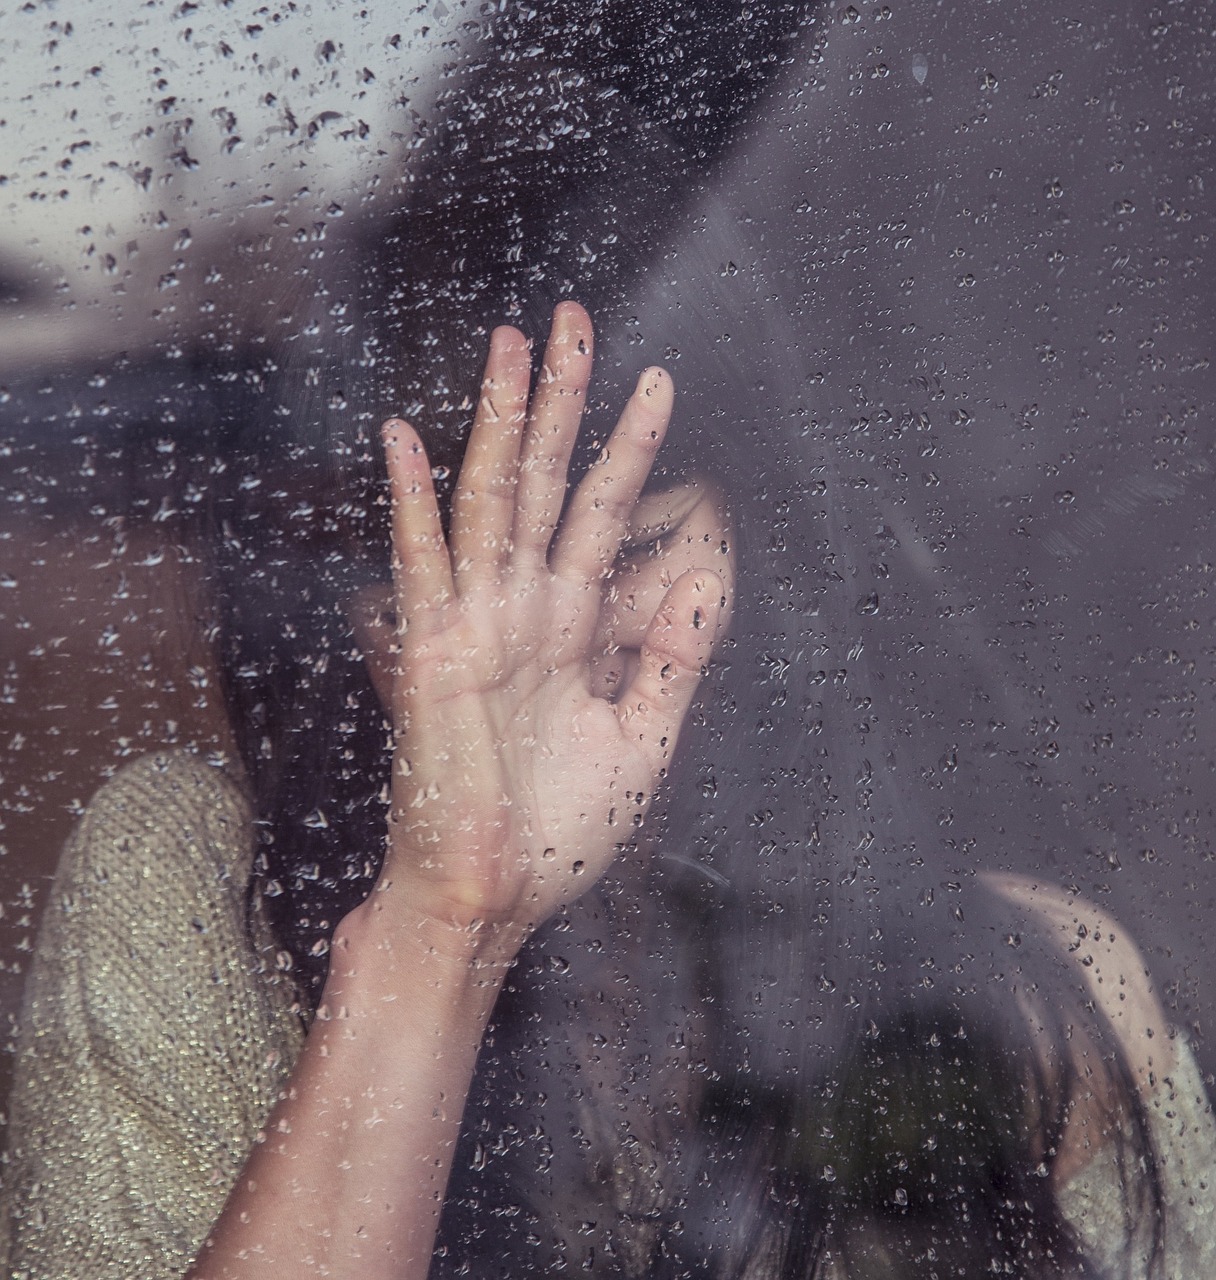 Image - girl sad crying raining rain drops